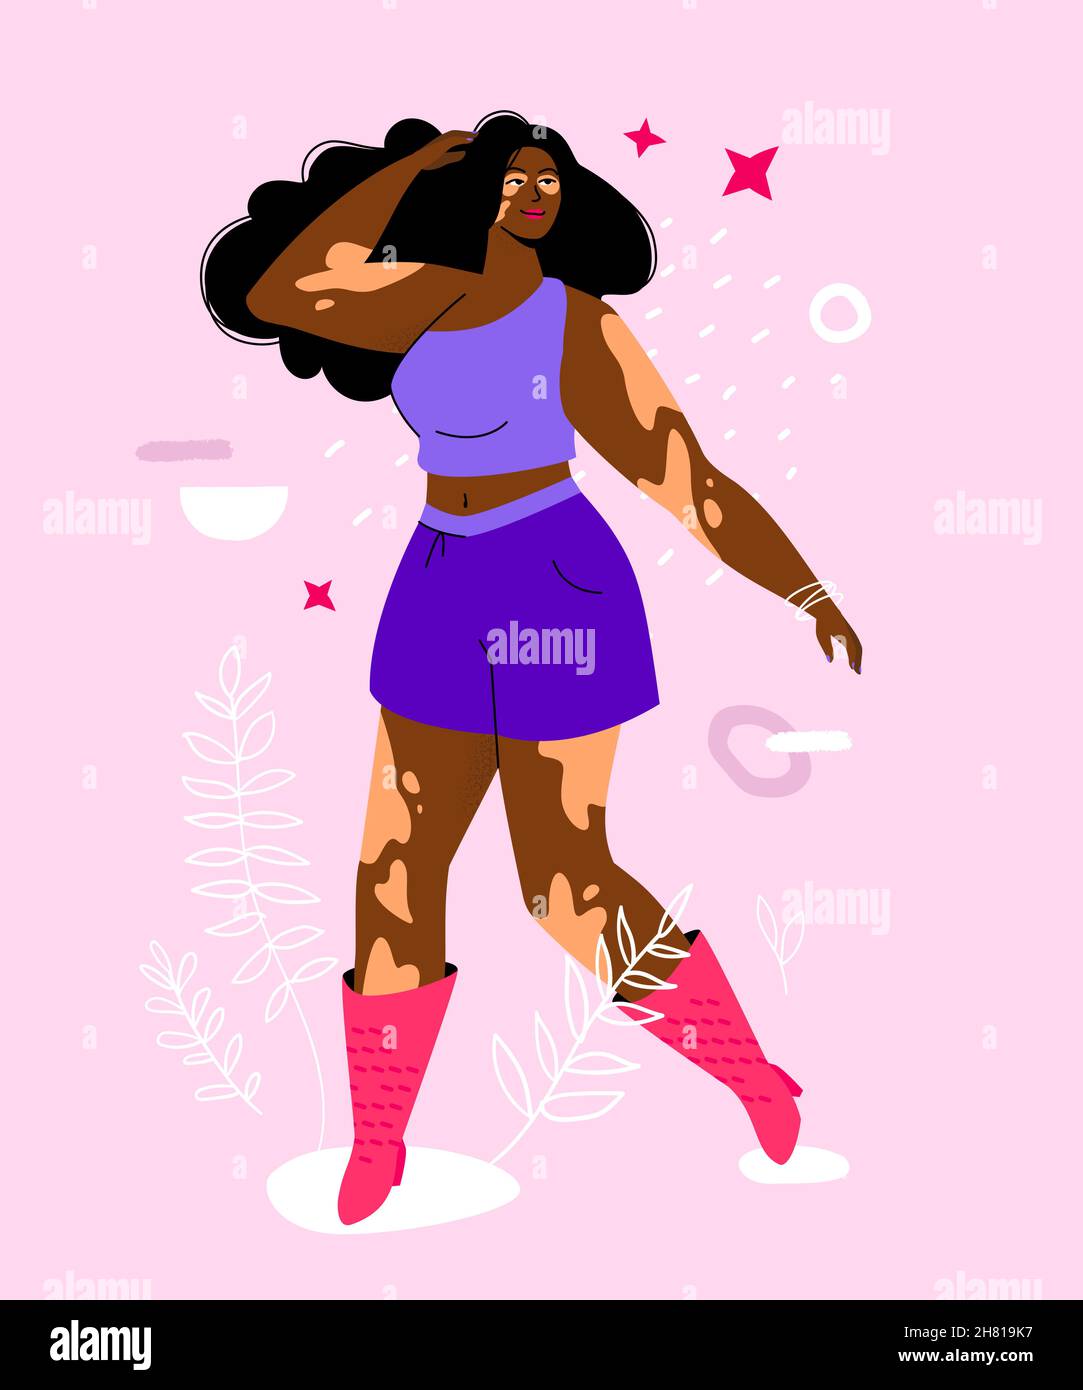 Seien Sie nicht schüchtern über Vitiligo - bunte flache Design Stil Illustration. Starke unabhängige Frau in lila Shorts und T-Shirt fühlen sich selbstbewusst. Sie k Stock Vektor